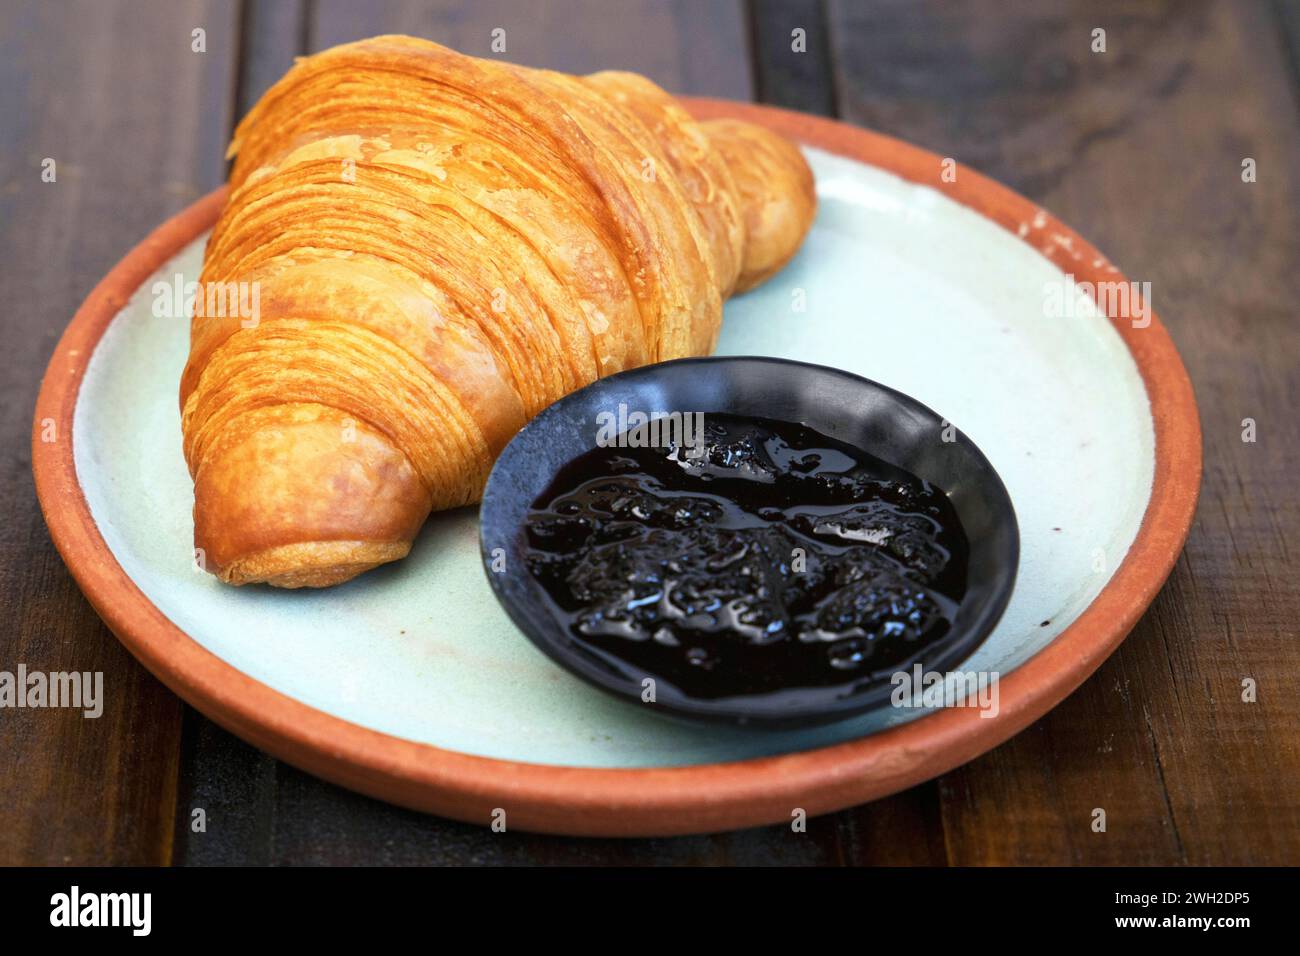 Un delizioso panino con croissant e un dolce preparato ad arte su un piatto. Foto Stock